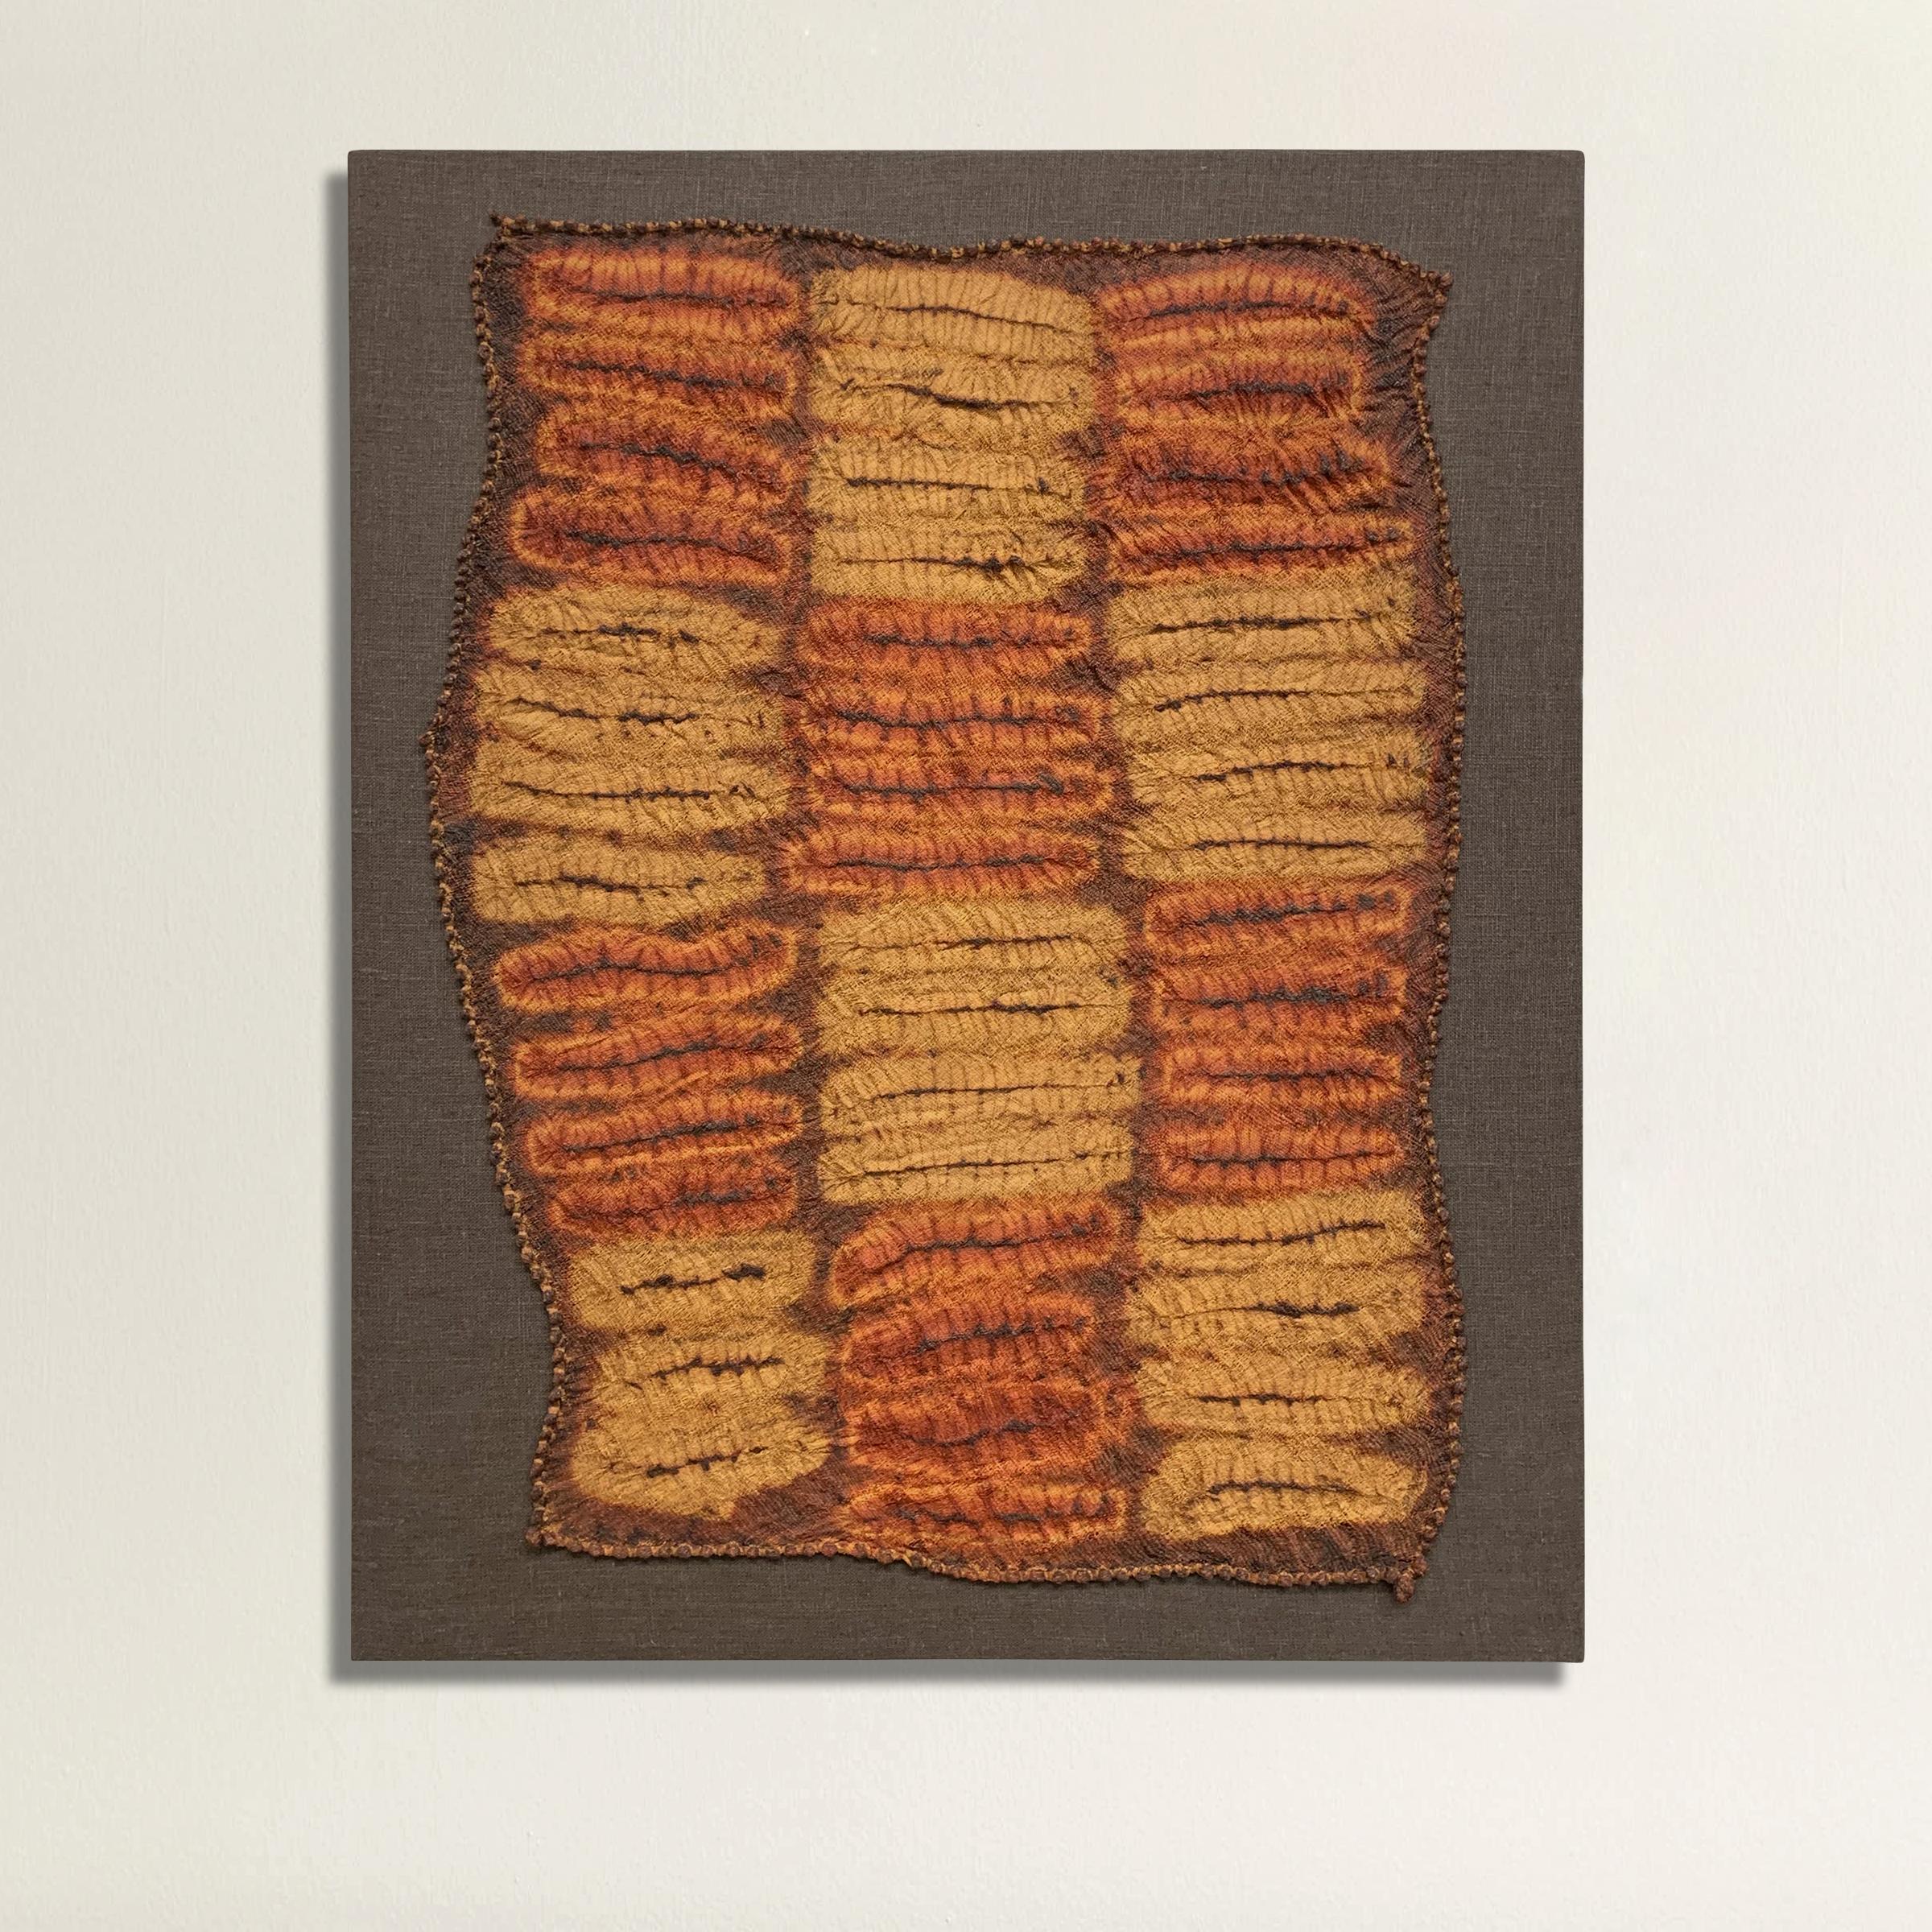 Eine unglaubliche und seltene Mitte des 20. Jahrhunderts Dida handplattiert Shibori tie-dyed Raffia zeremoniellen Tuch auf einem Leinen gestreckt Bord montiert. Dieses Tuch wurde nicht auf einem Webstuhl gewebt, sondern vollständig von Hand, so dass